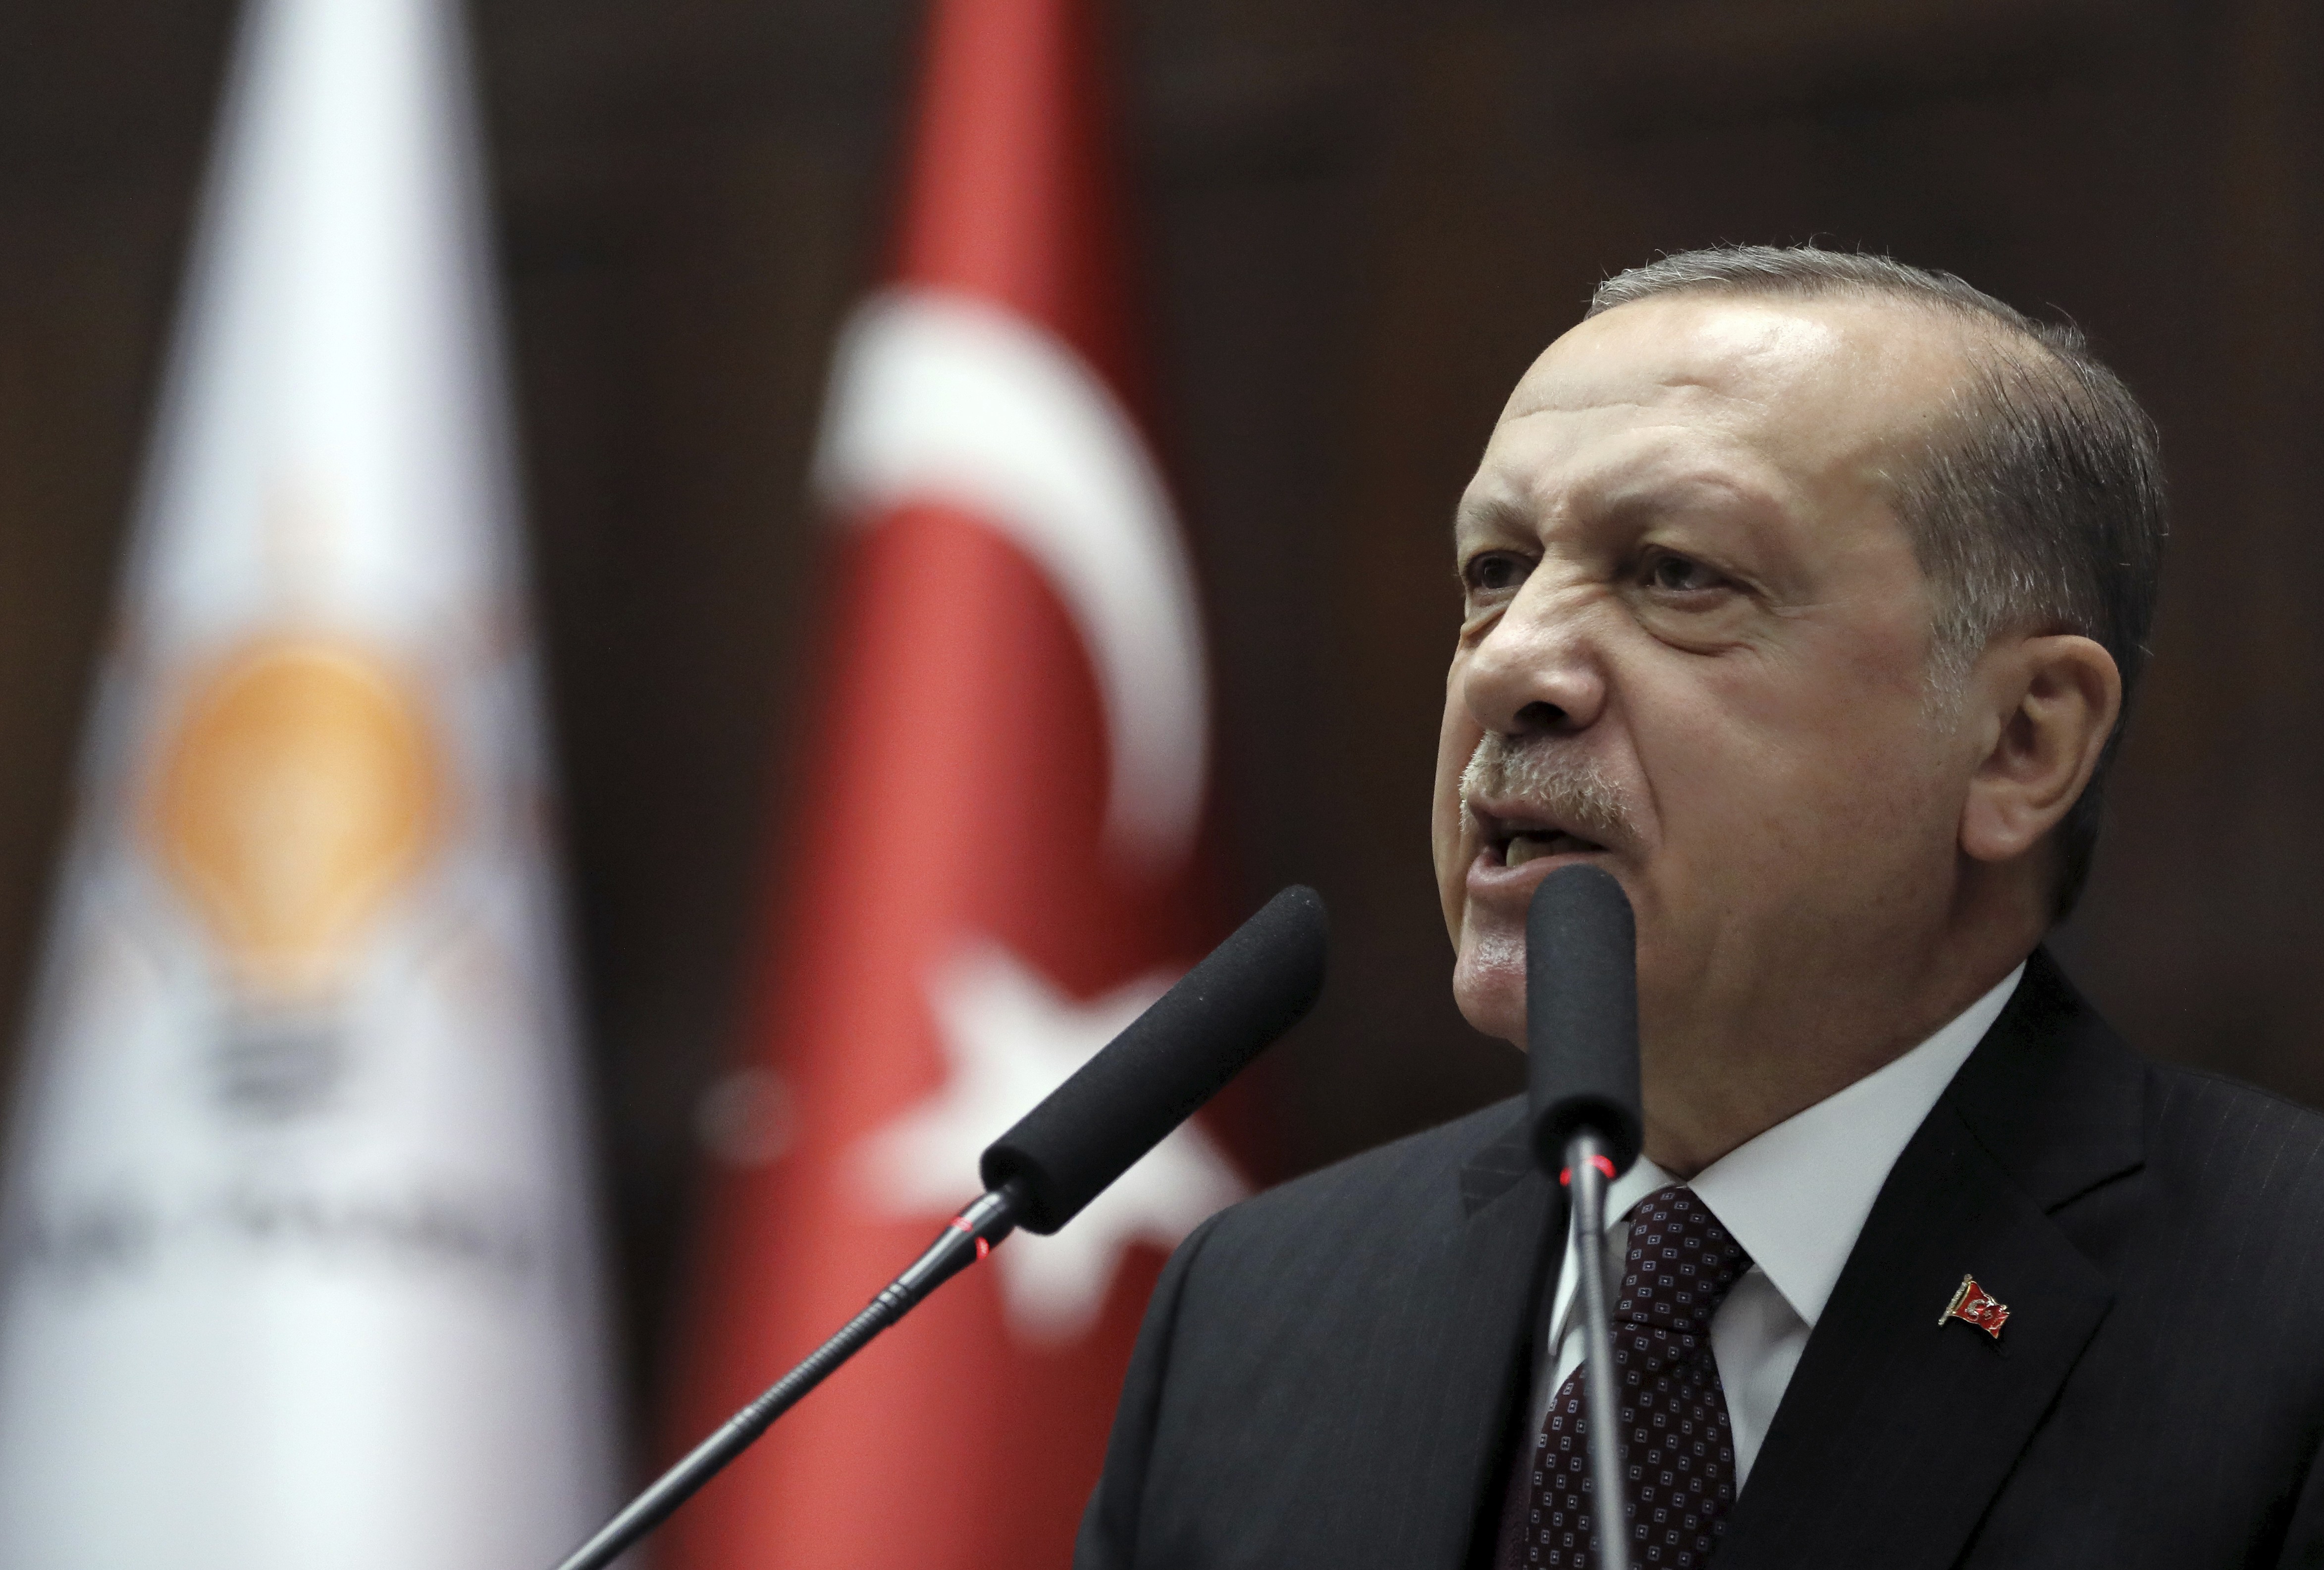 Alegeri cruciale: va preda Erdogan puterea?